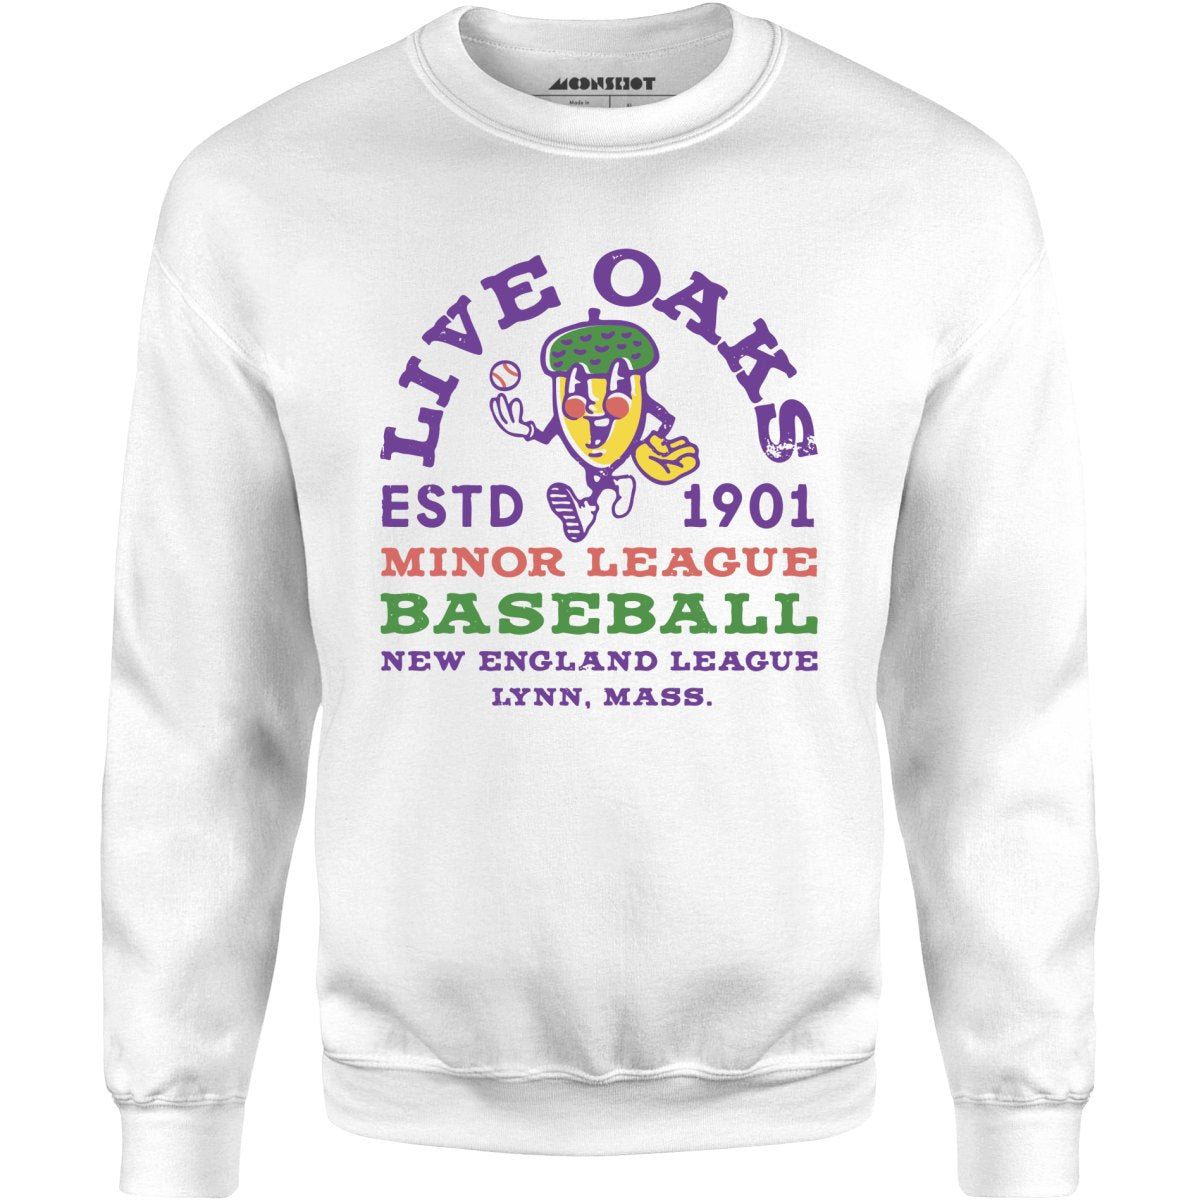 Lynn Live Oaks - Massachusetts - Vintage Defunct Baseball Teams - Unisex Sweatshirt